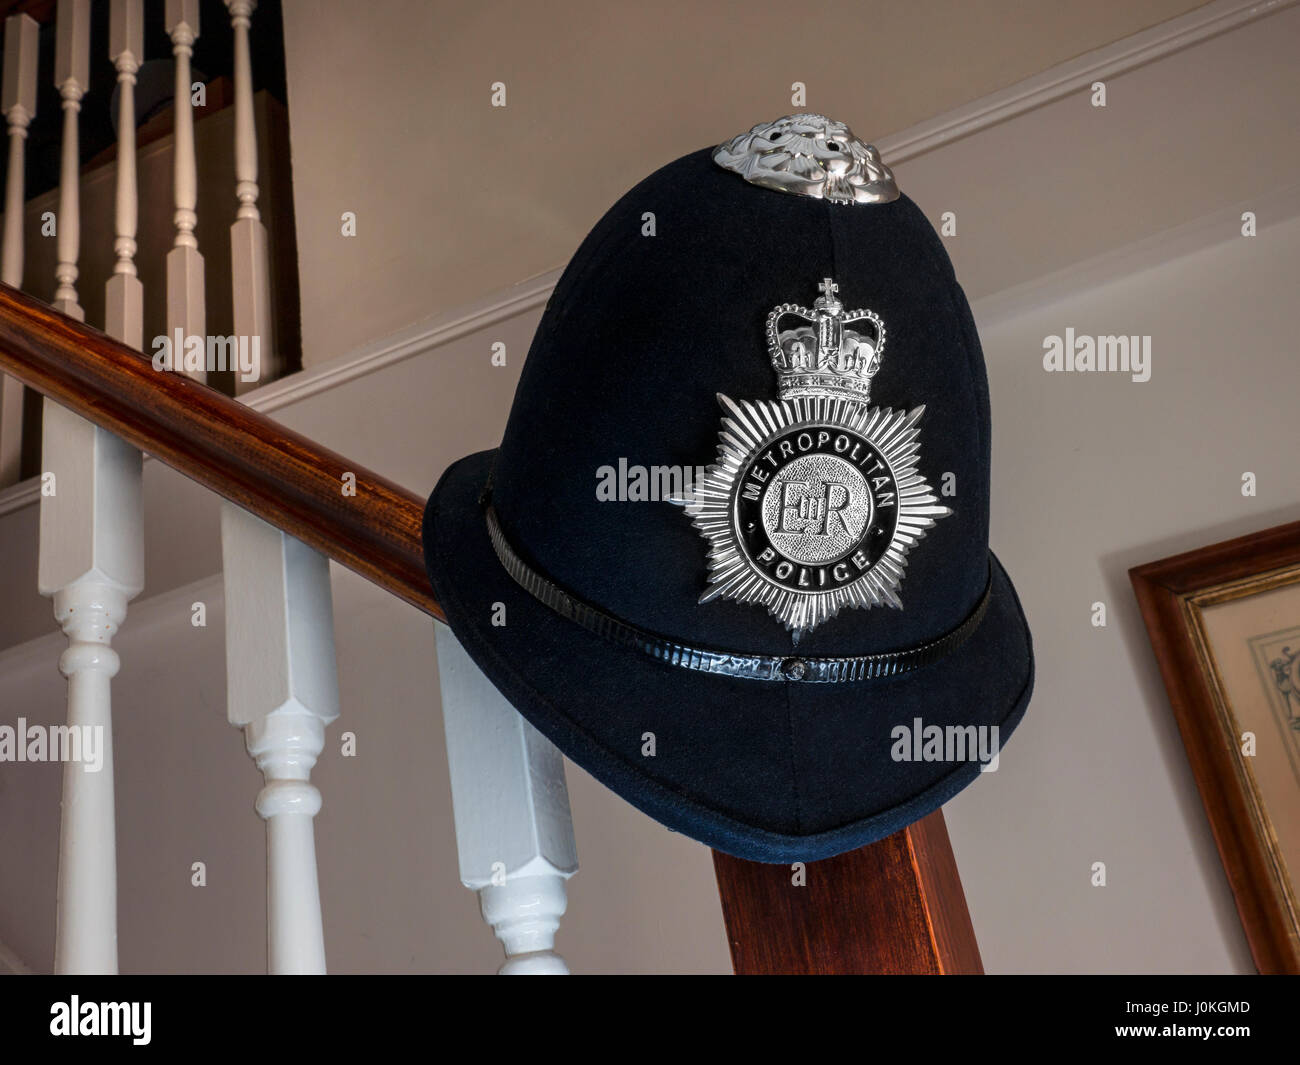 London Metropolitan Polizist Helm und Abzeichen auf Treppe Geländer in inländischen "End of Day/Interview" Heimat Wohnsituation Stockfoto